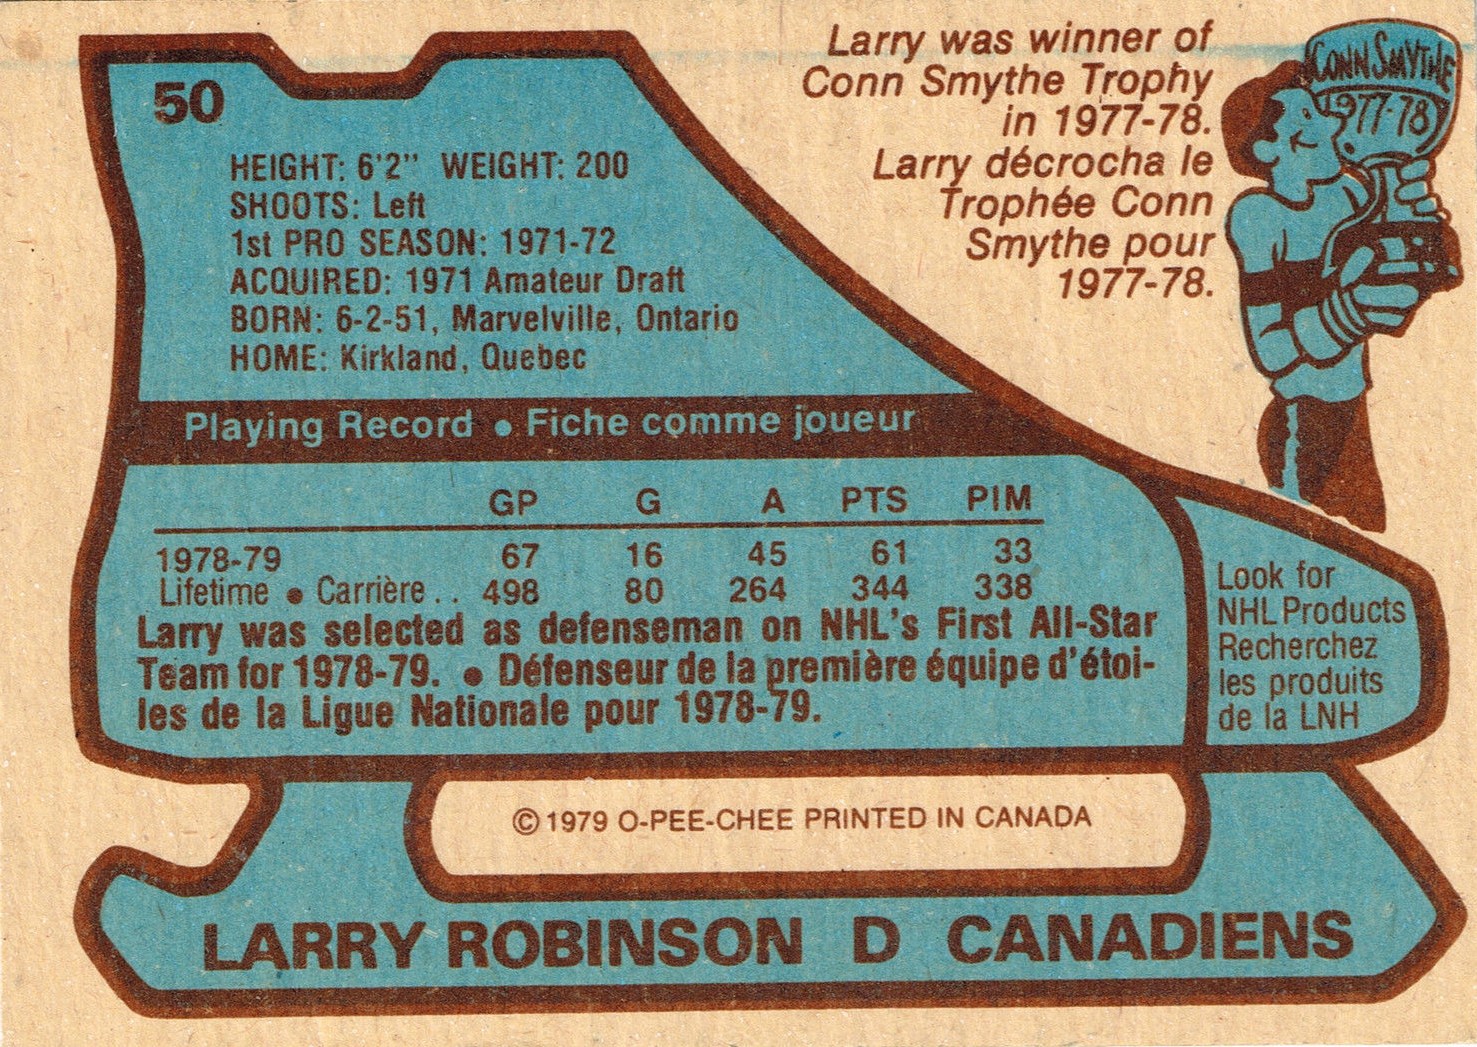 Larry Robinson - Wikipedia